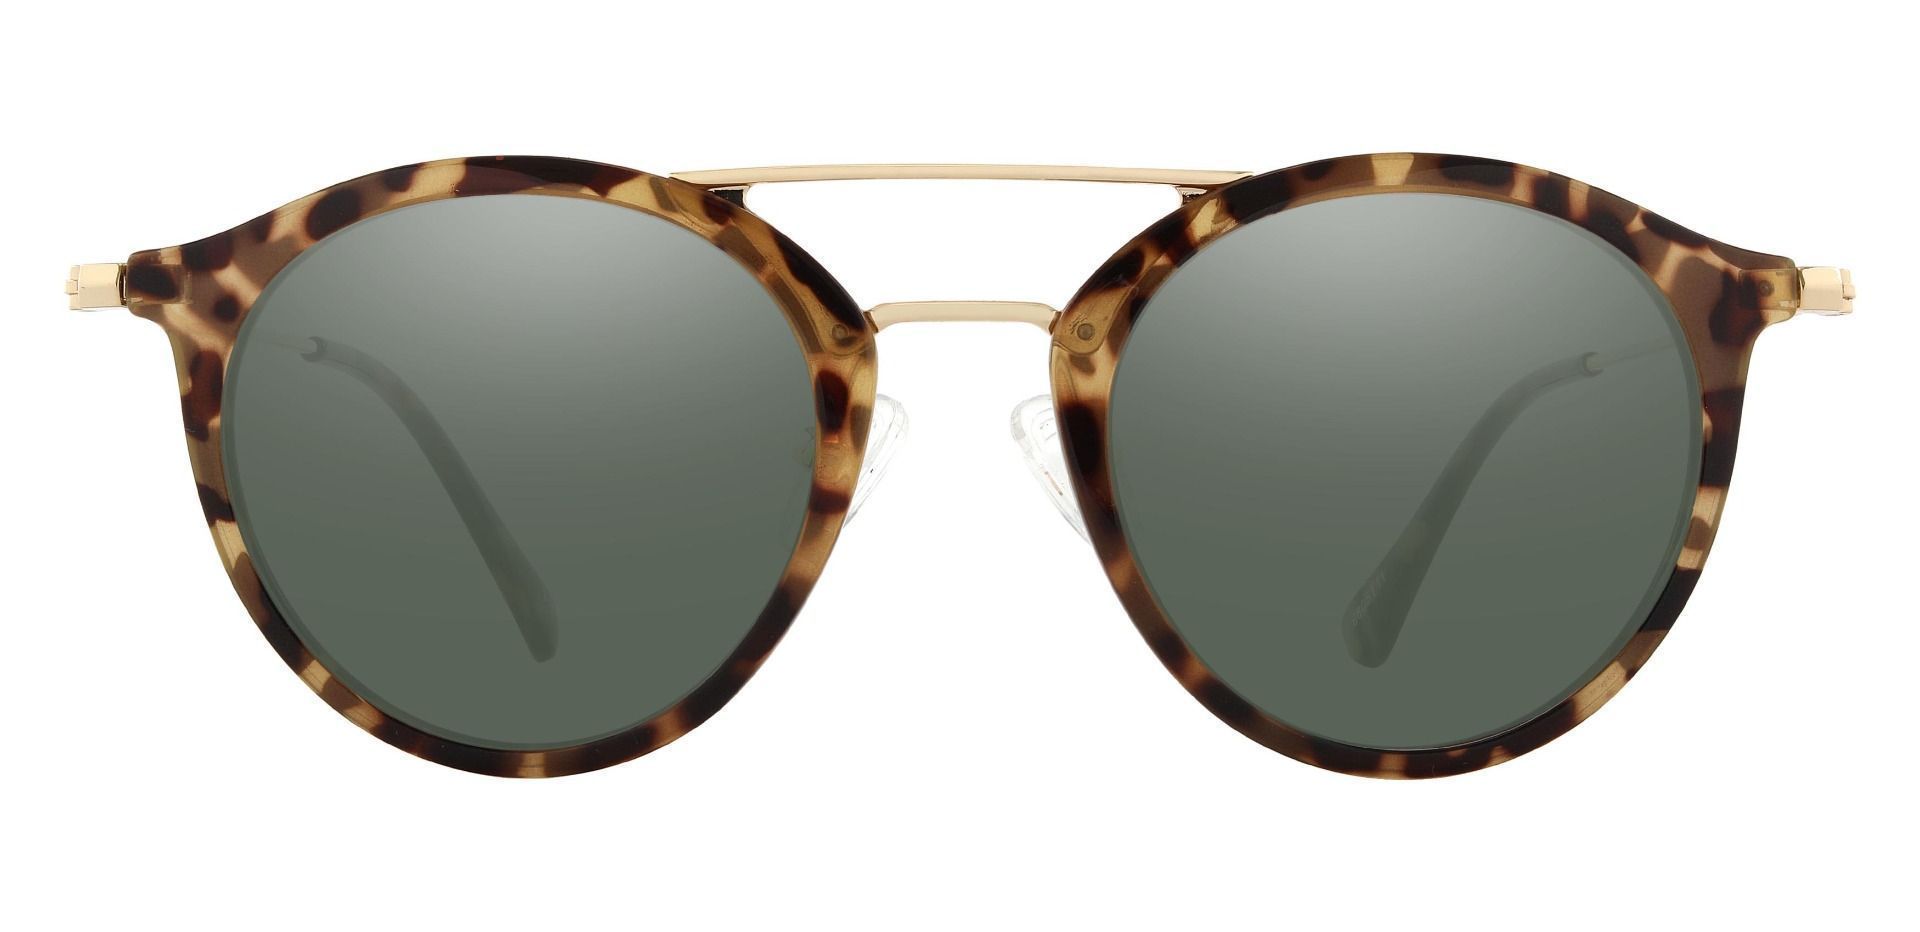 Malden Aviator Prescription Sunglasses - Tortoise Frame With Green Lenses